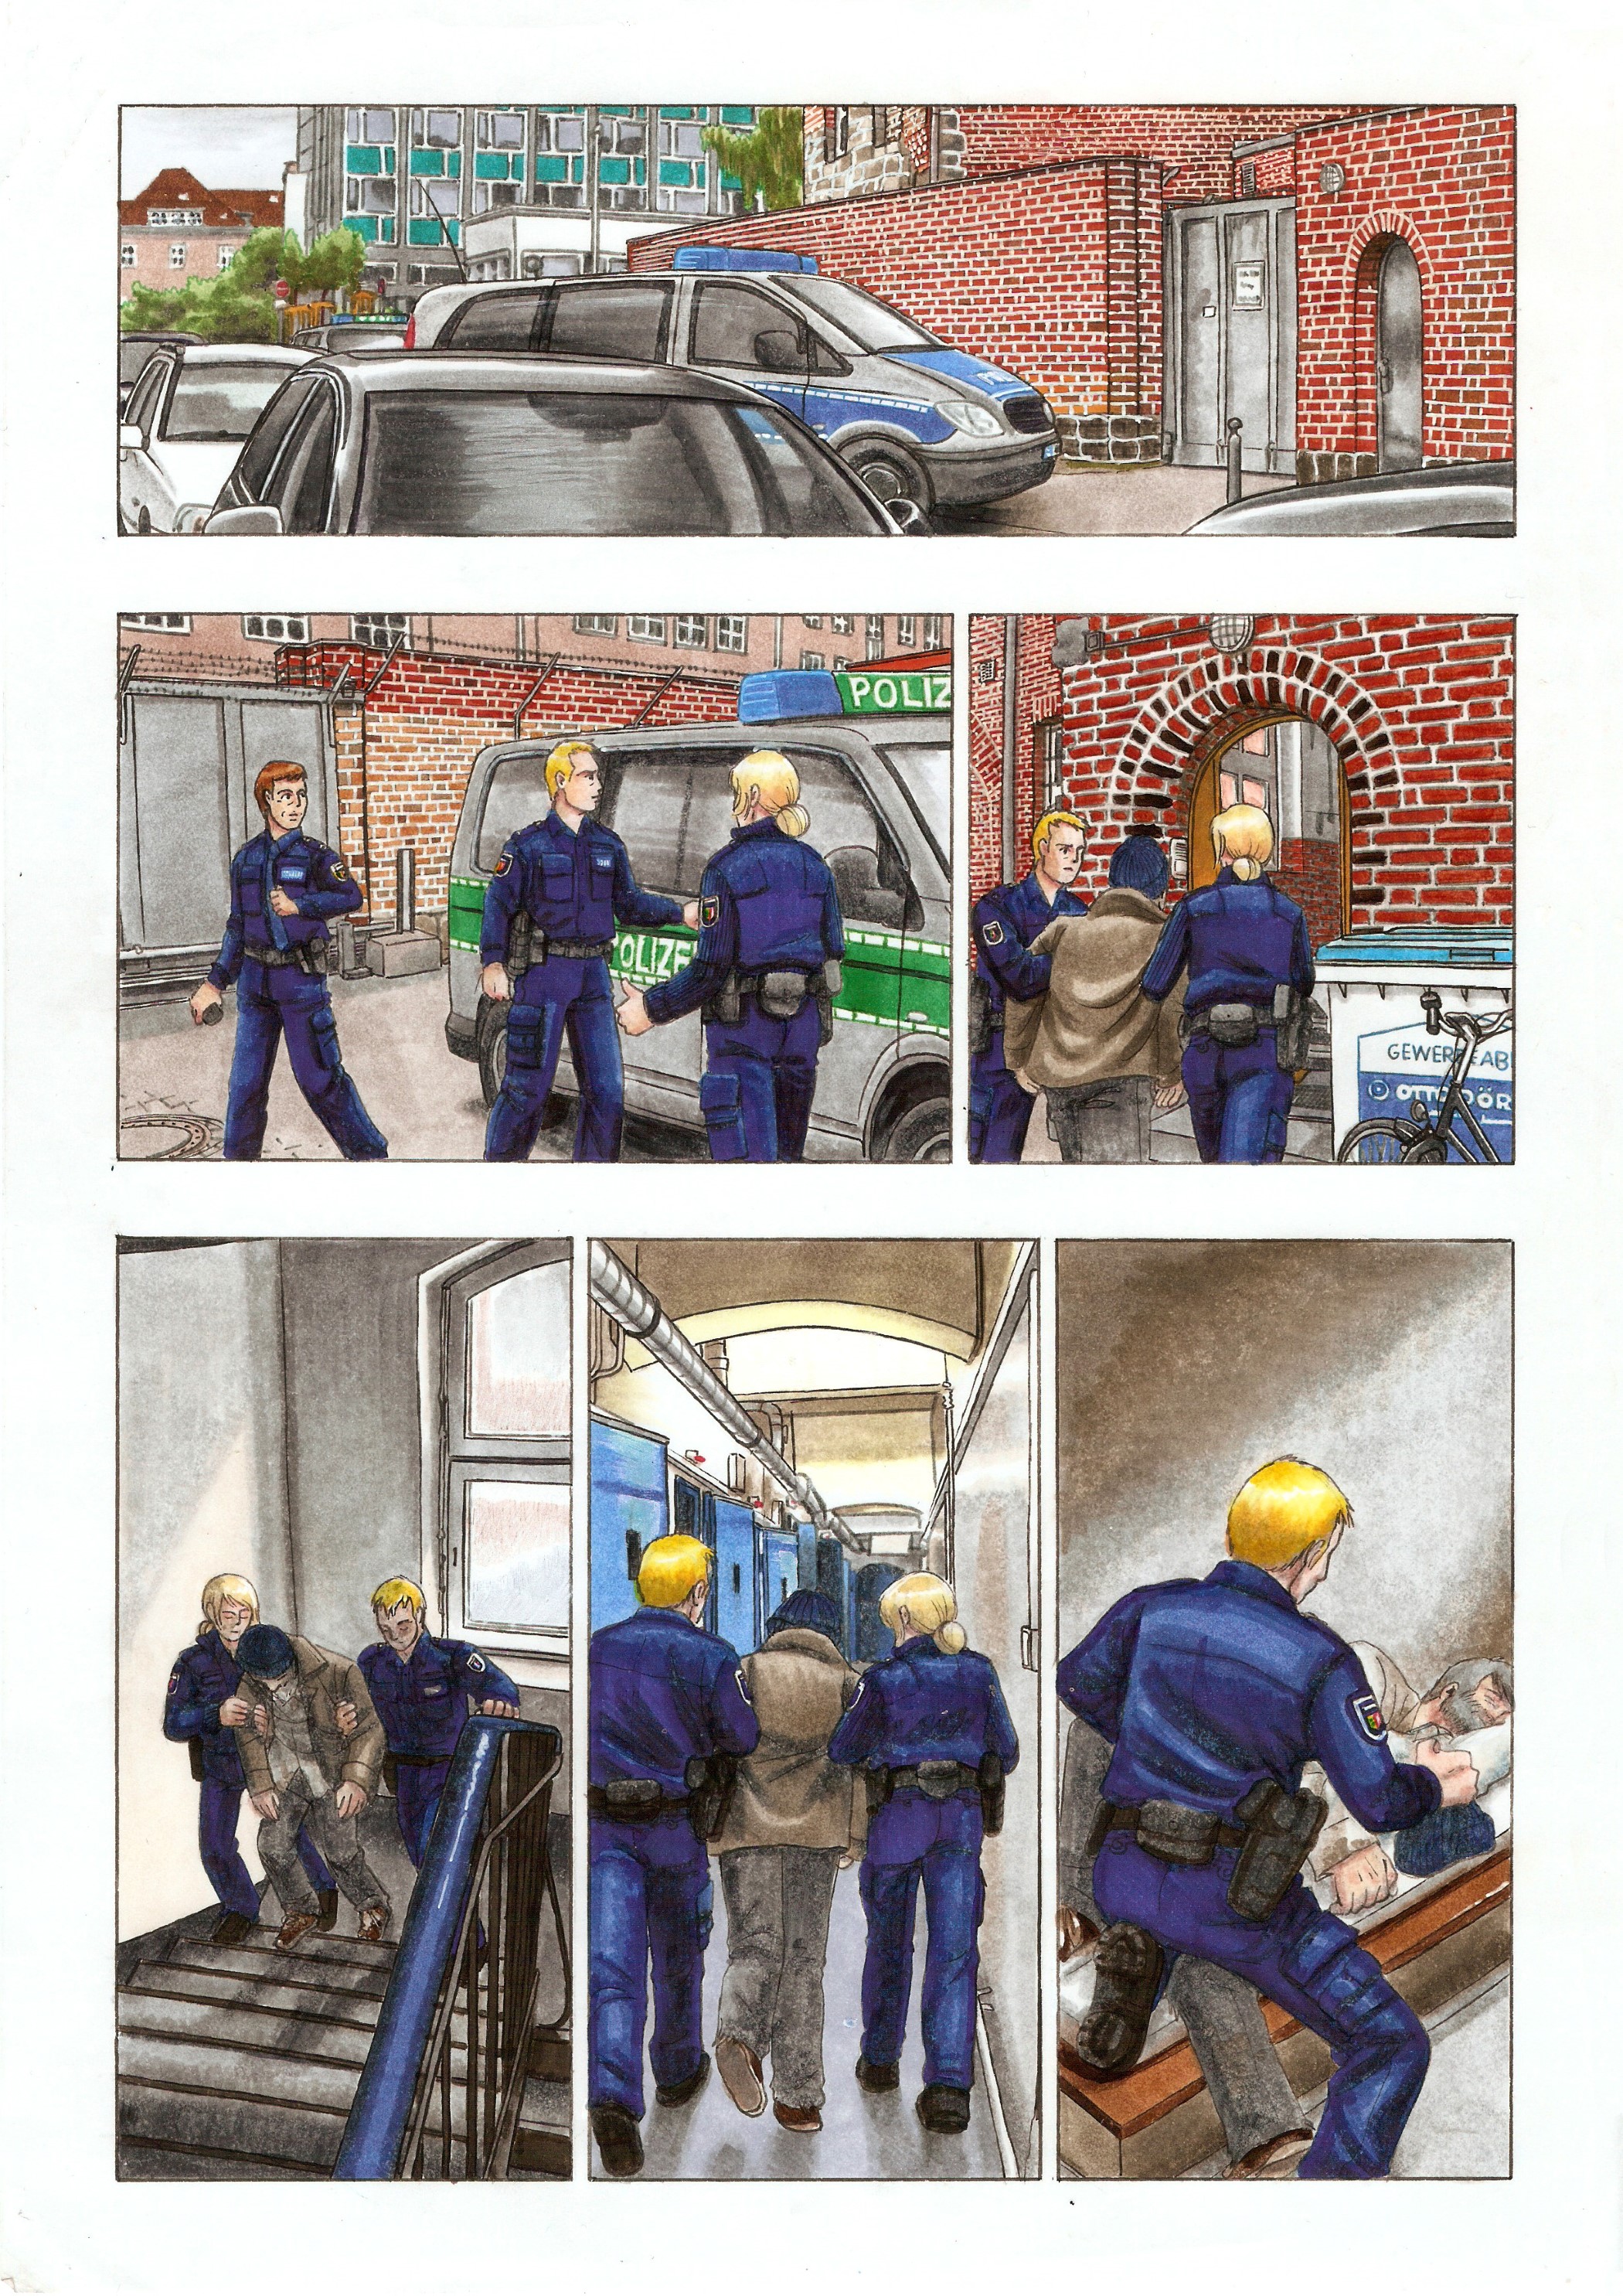 Comic-Seite, Thema: Polizei; von Vanessa Drossel